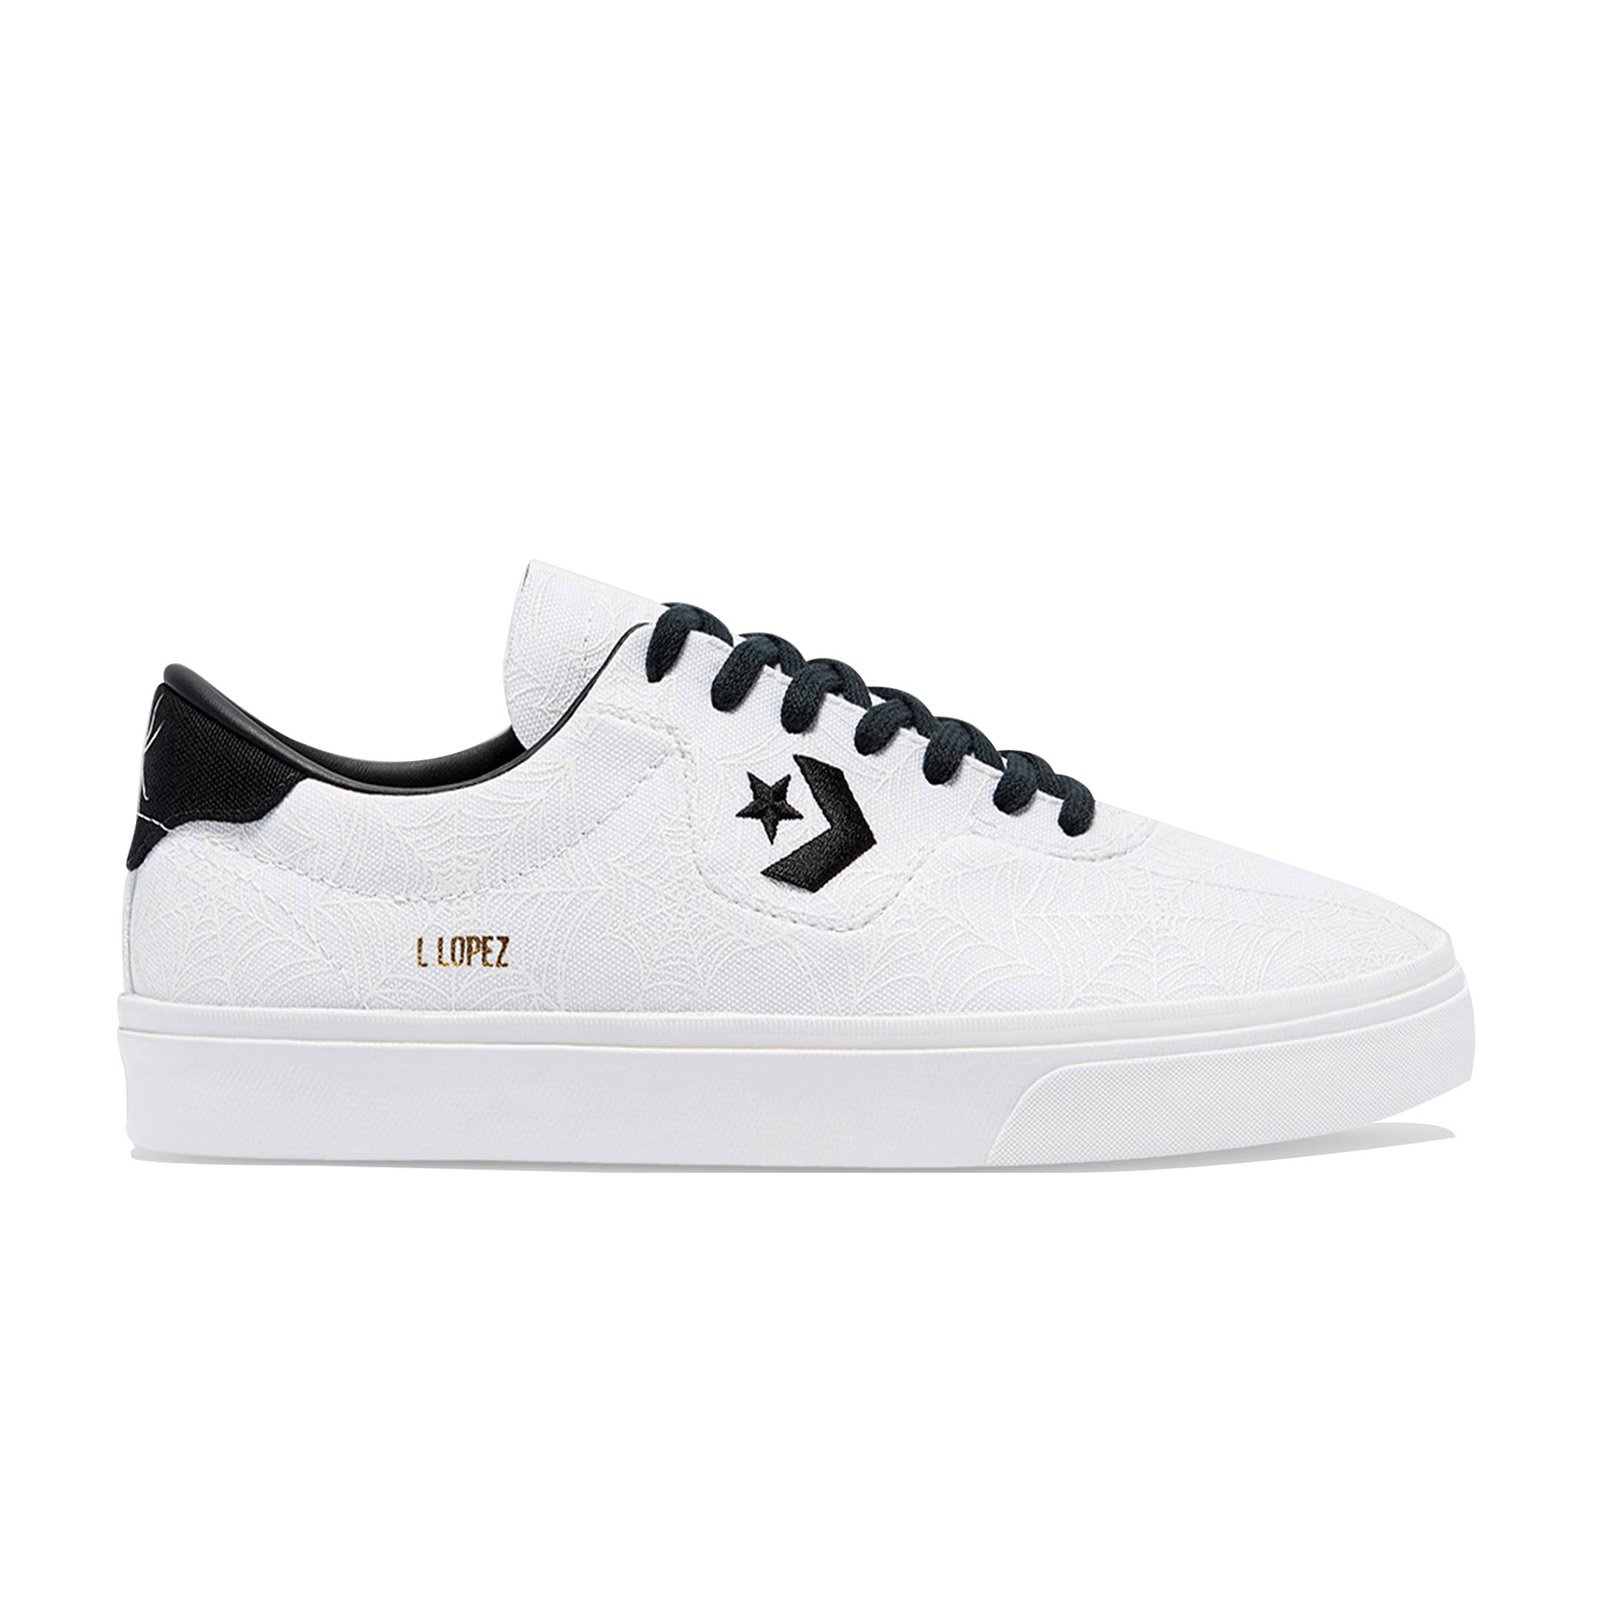 รองเท้า Converse Cons Louie Lopez Pro White Widow Ox - White/Black [170939CU1WB]